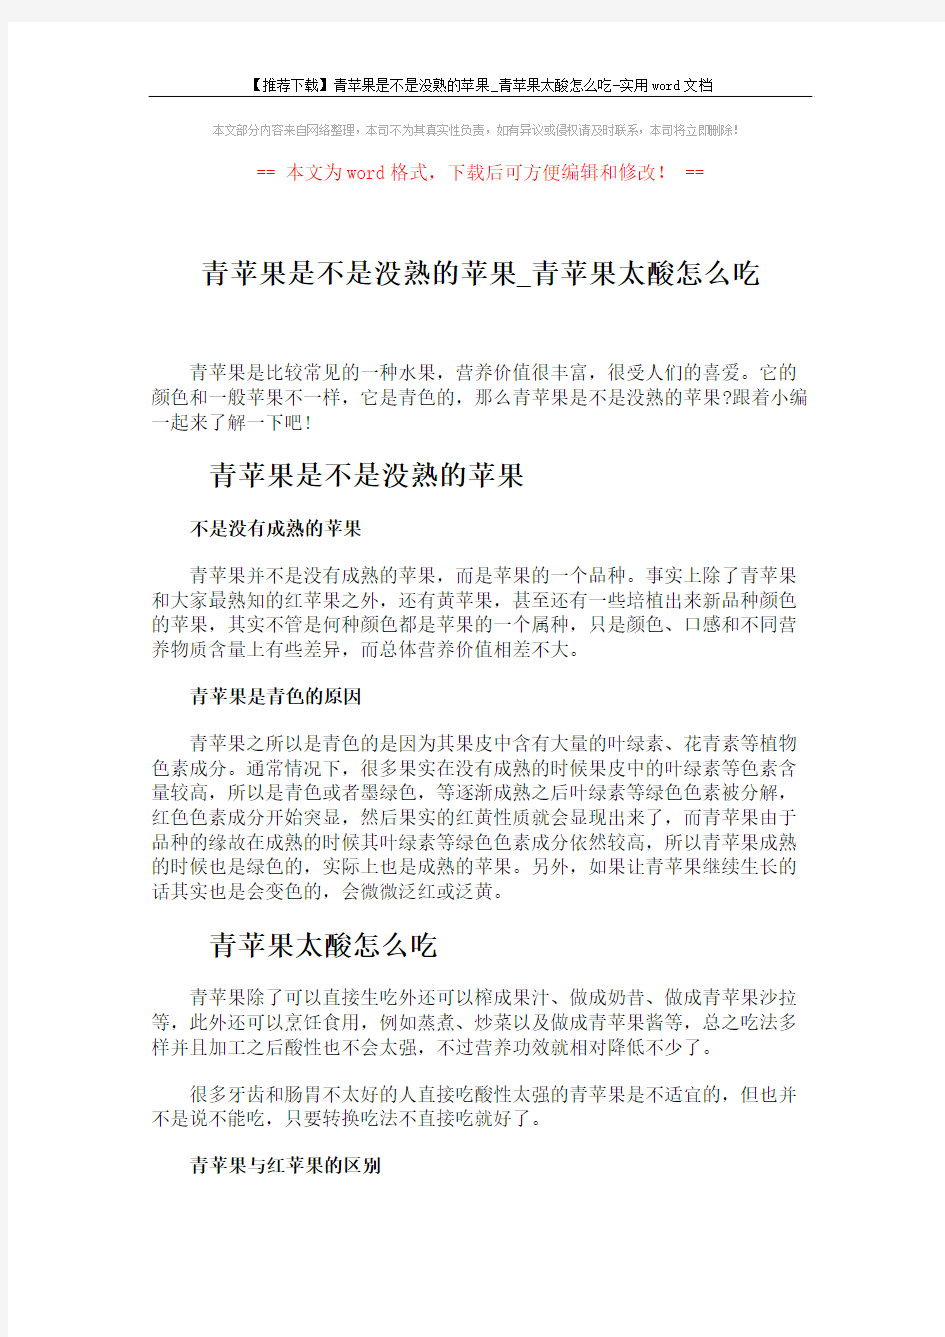 【推荐下载】青苹果是不是没熟的苹果_青苹果太酸怎么吃-实用word文档 (2页)